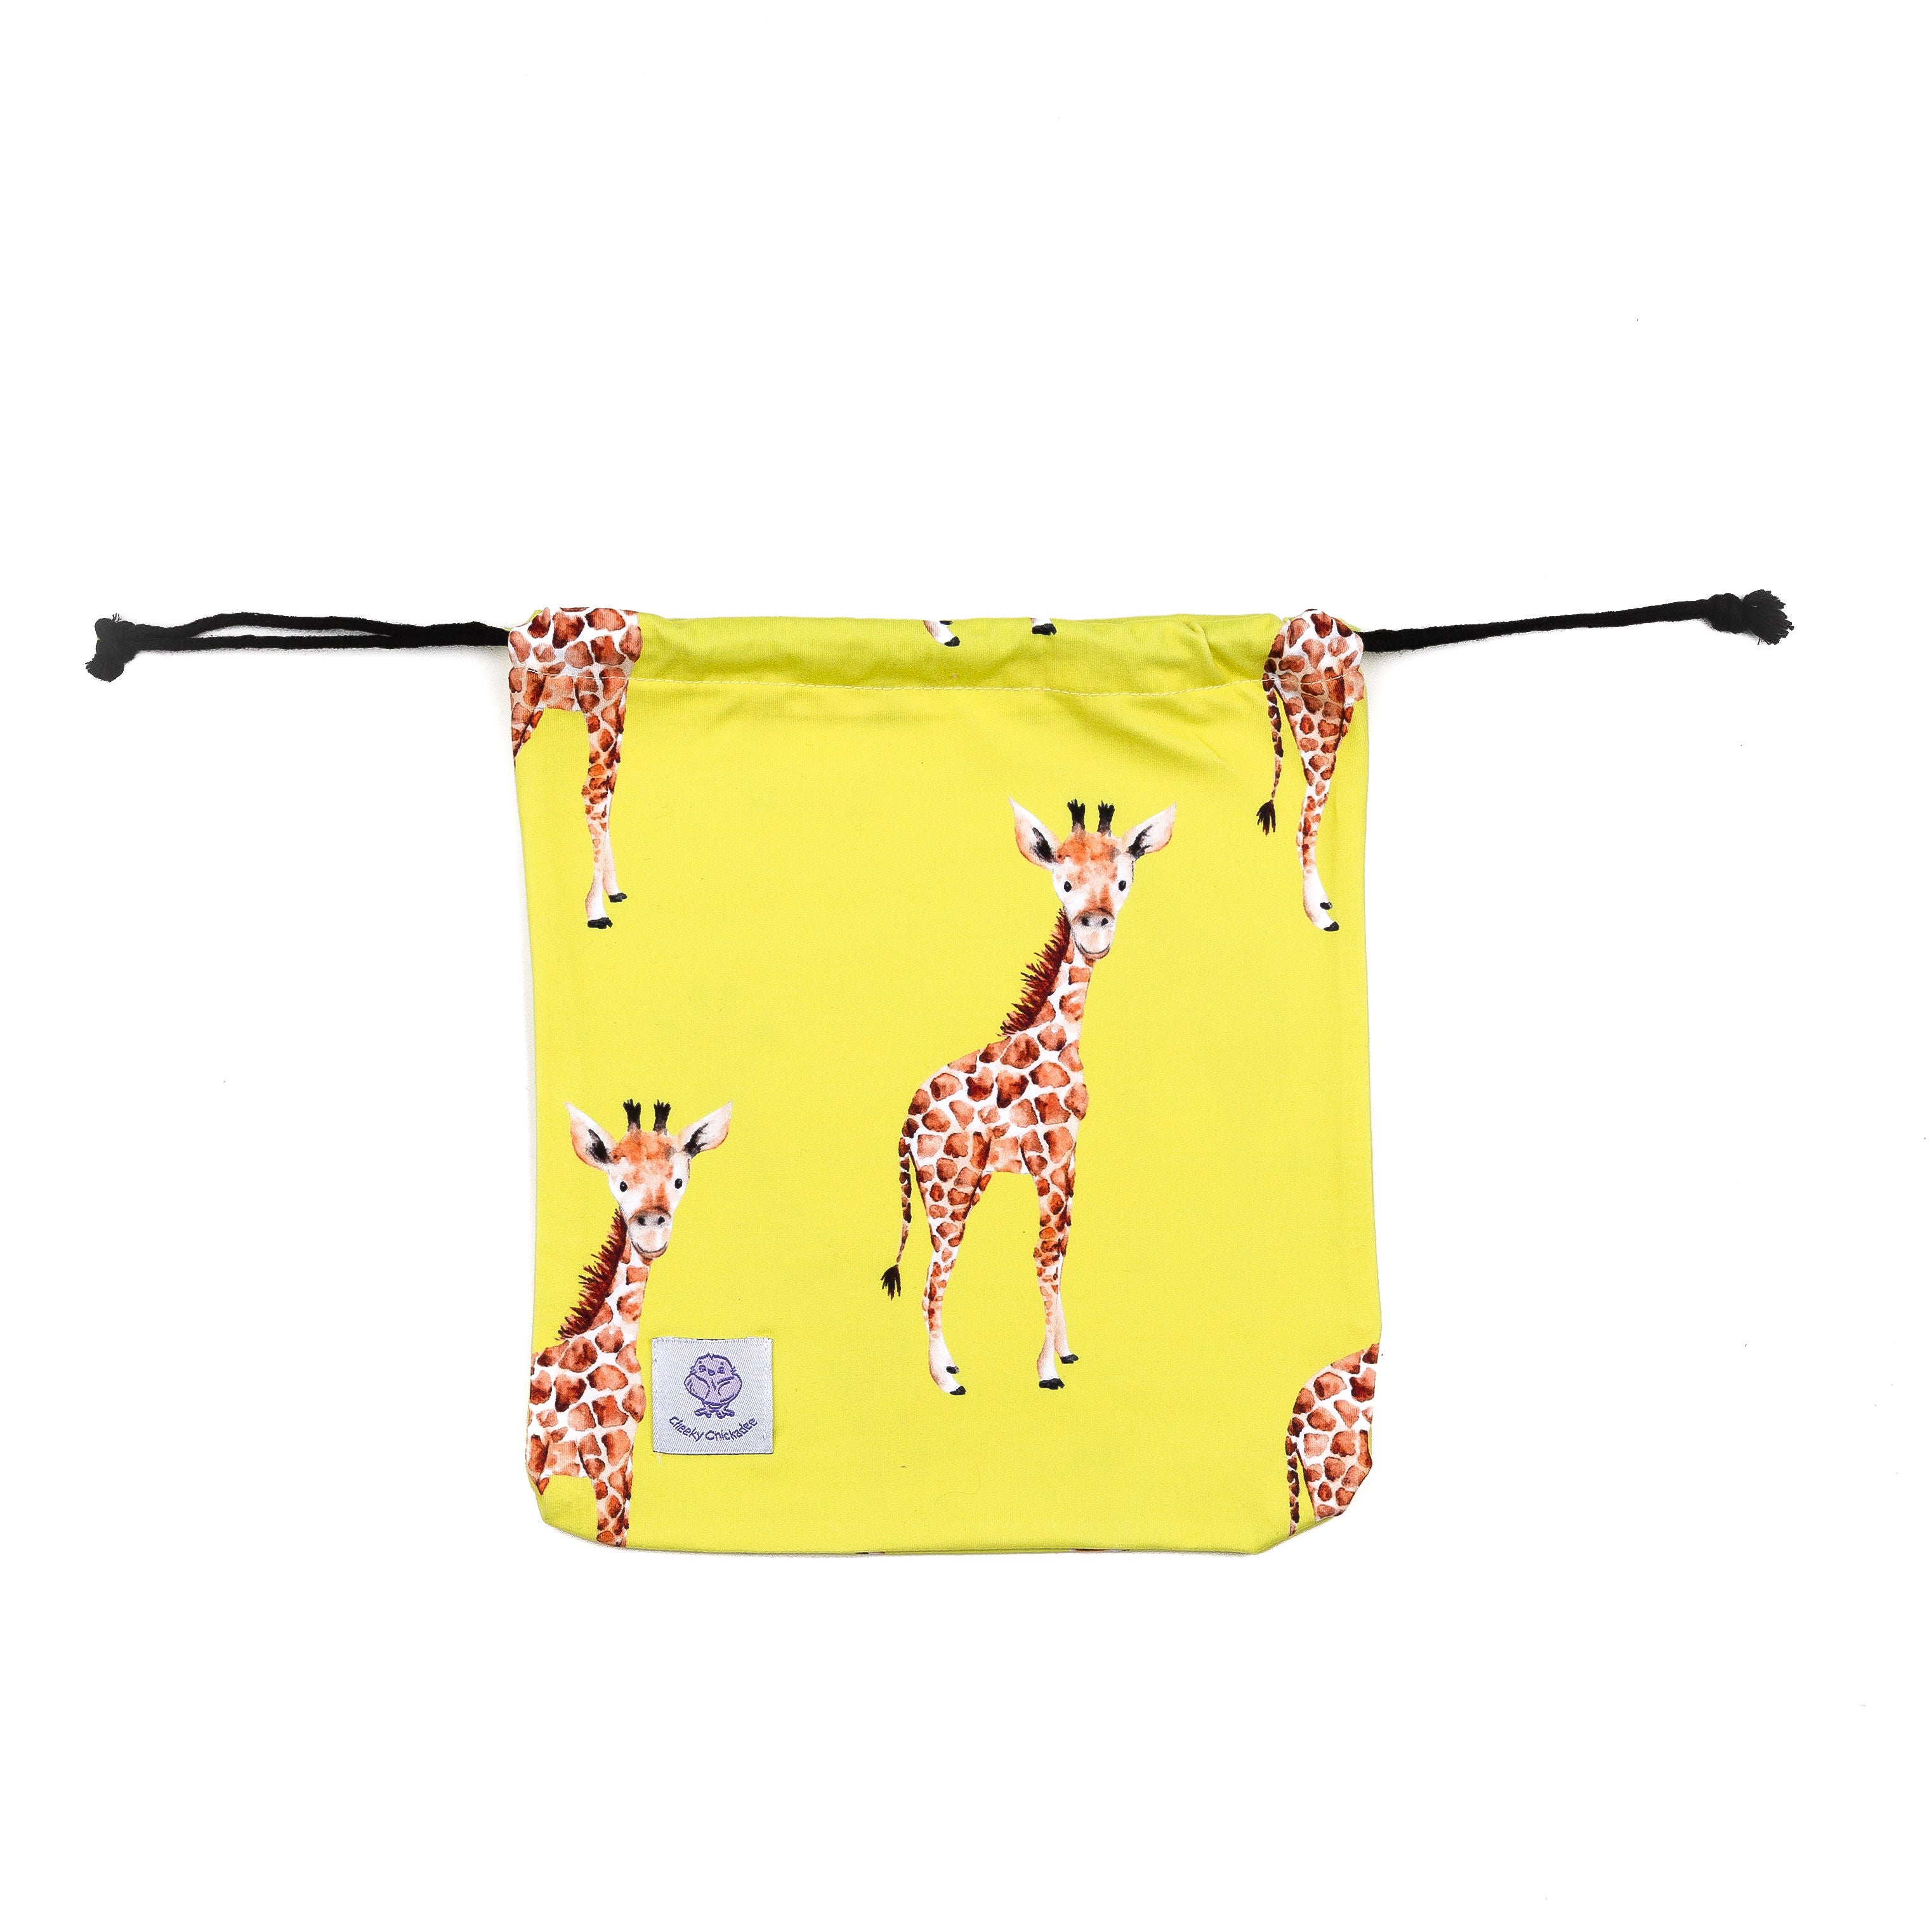 Yellow Giraffe Kids' Rash Top - Cheeky Chickadee Store